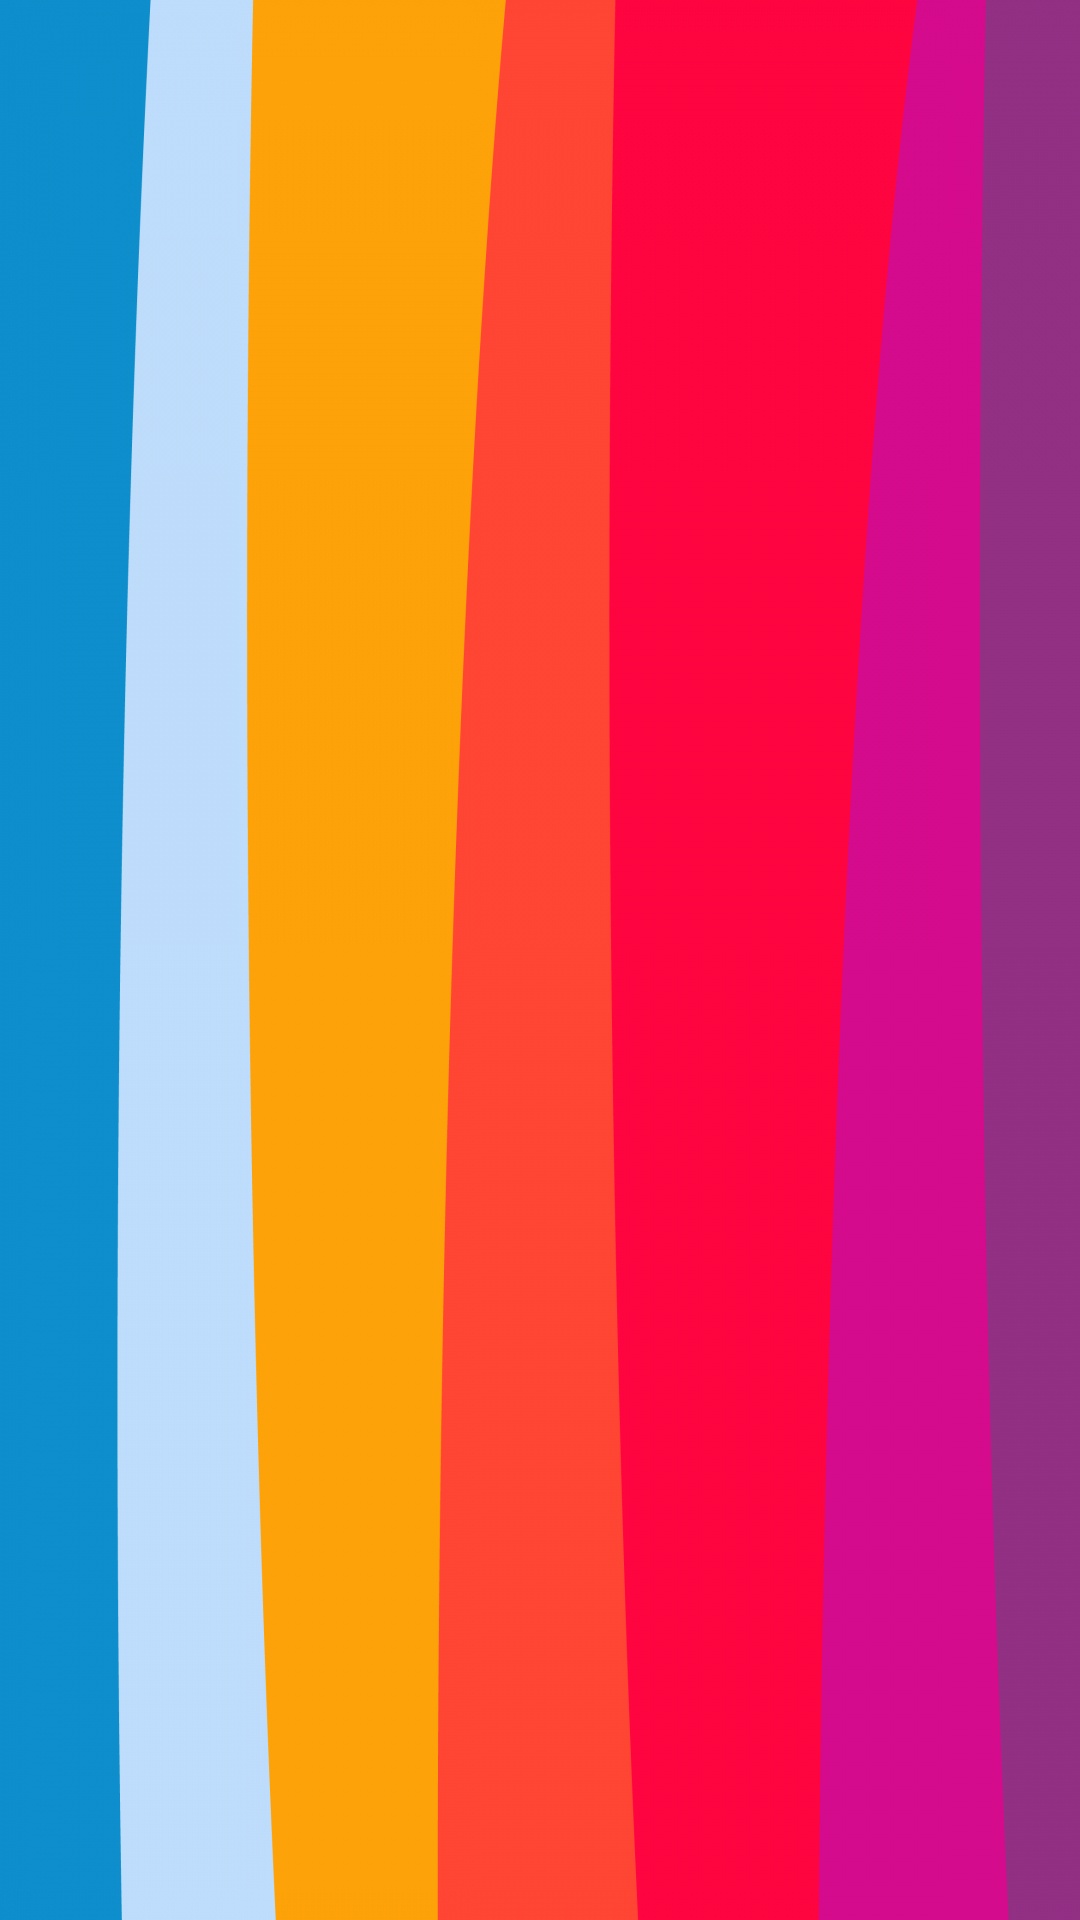 Orange, Äpfeln, Farbigkeit, Blau, Purpur. Wallpaper in 1080x1920 Resolution